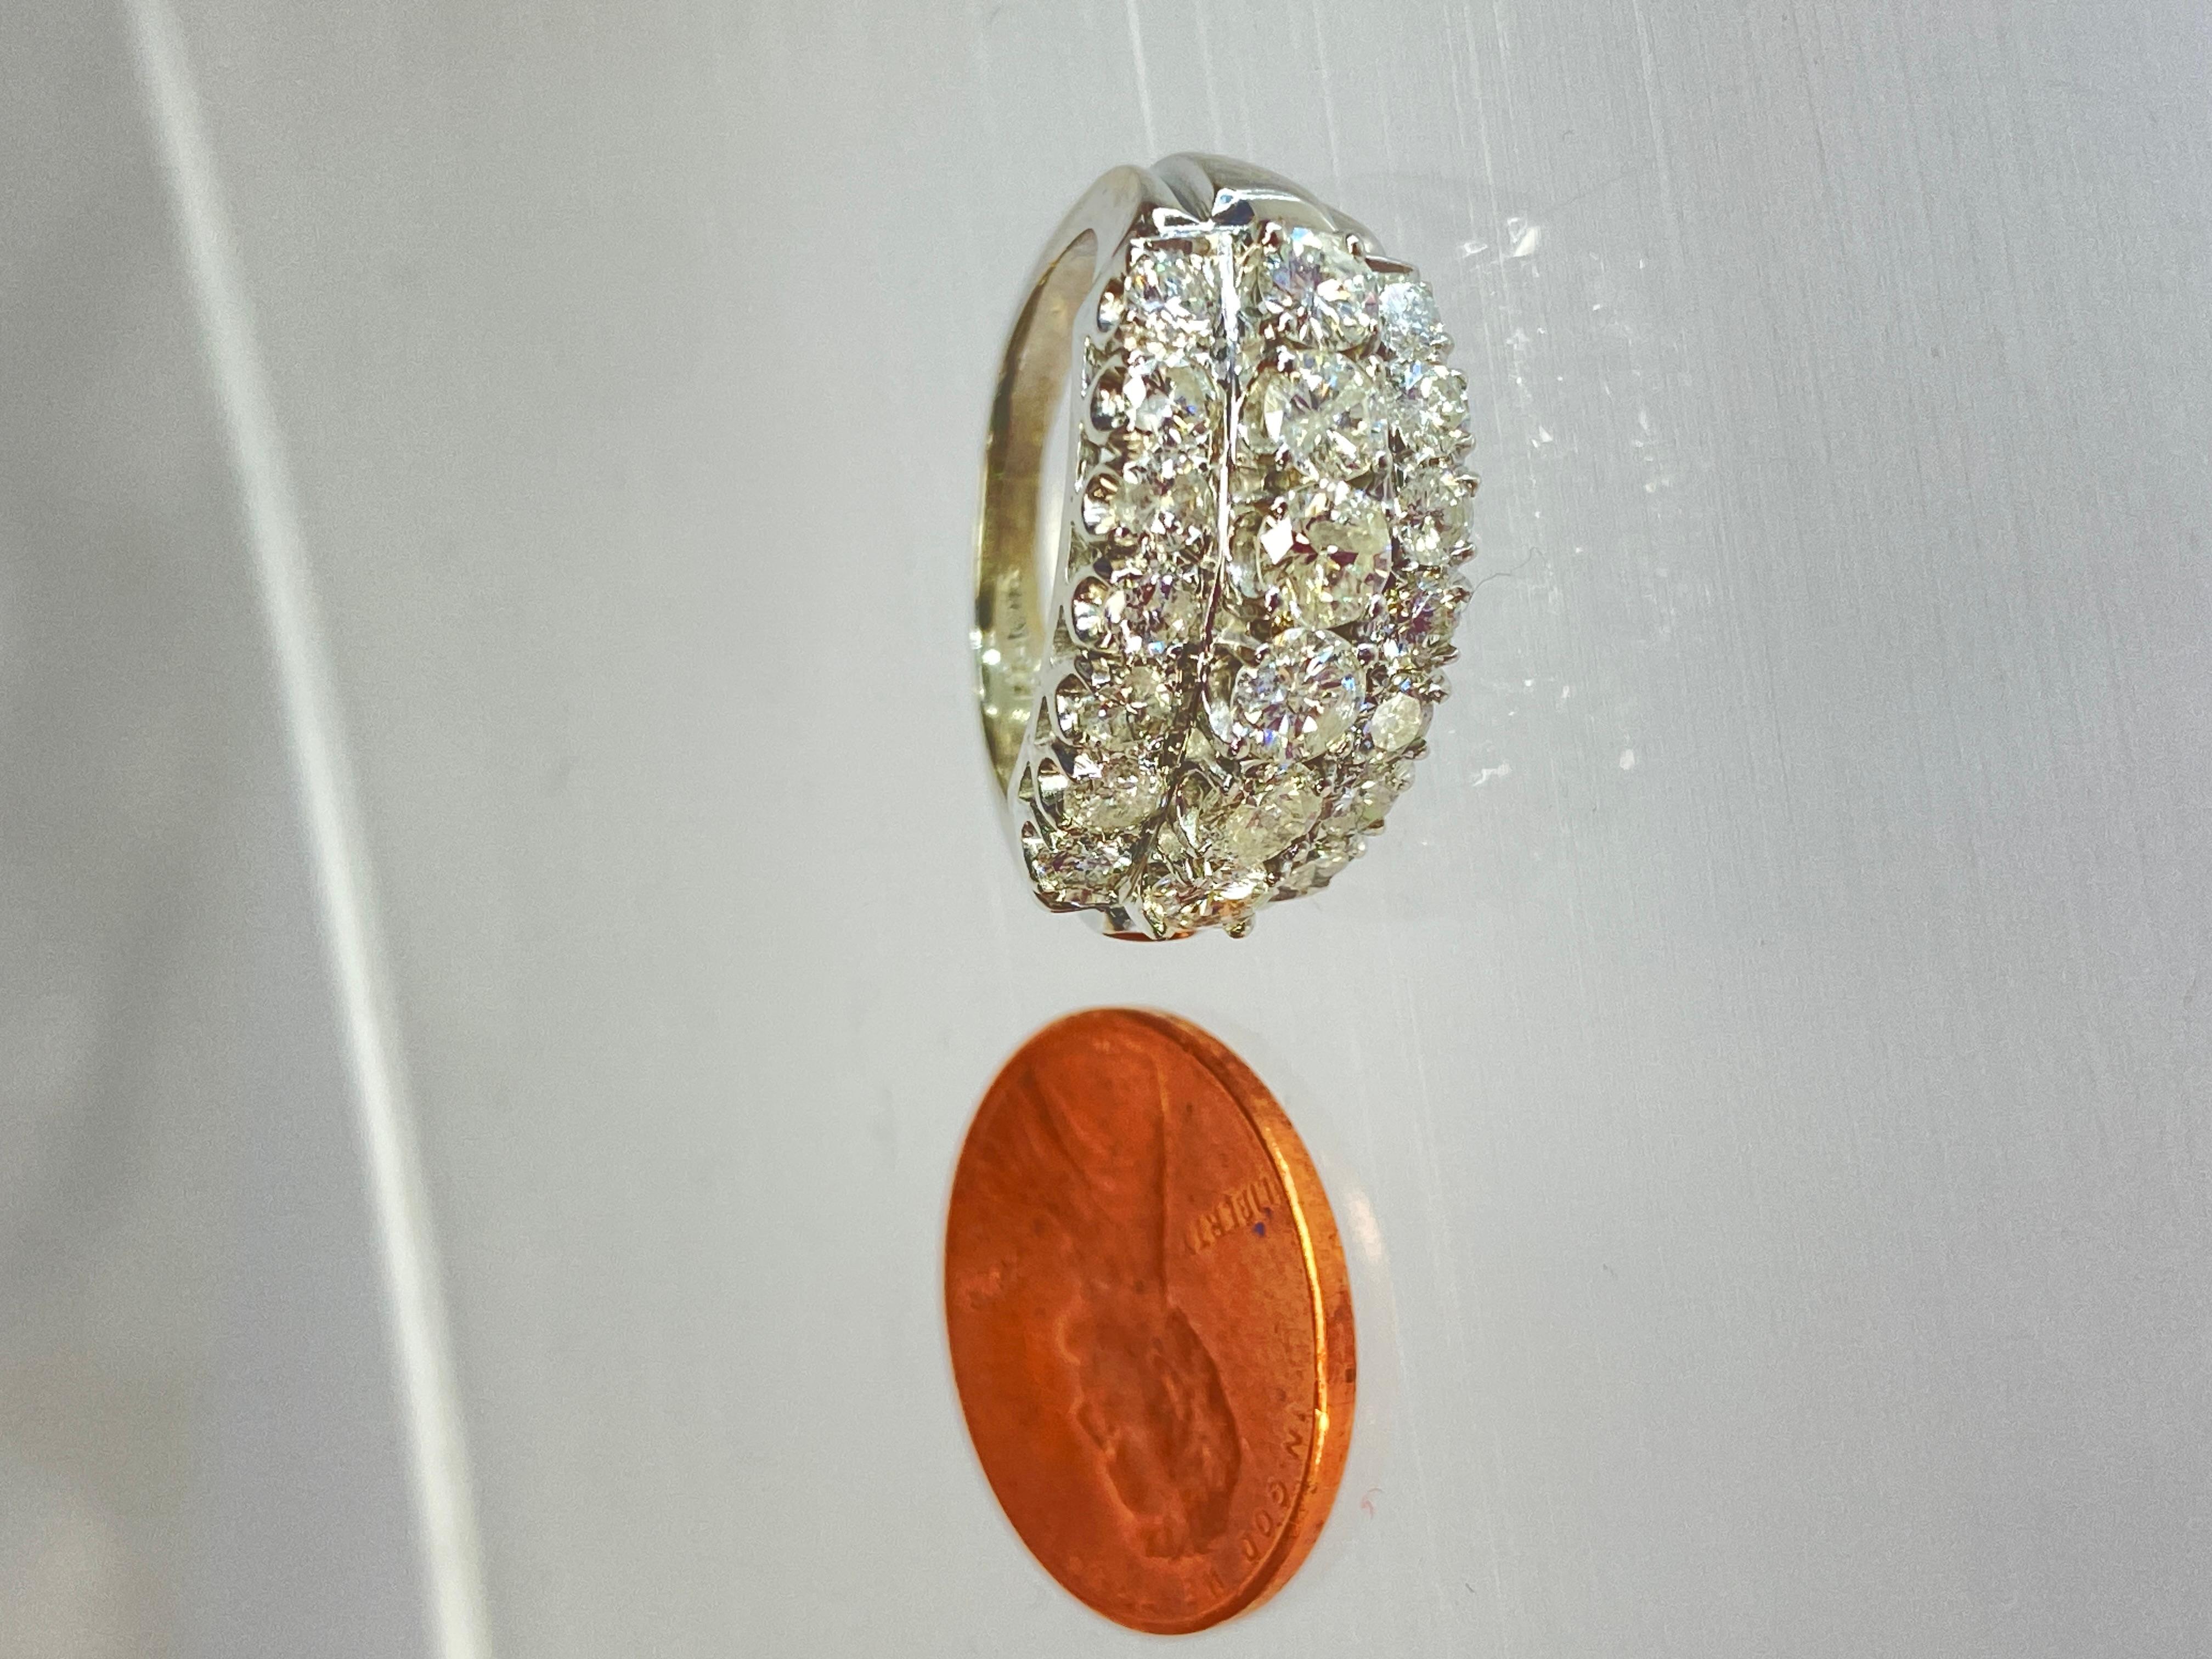 14K Weißgold Dreireihiger 2 Karat Naturdiamant Rundschliff Ehering

Dieser Ring ist ein atemberaubendes Stück, das Opulenz und exquisite Handwerkskunst verkörpert. 

Das Band zeichnet sich durch ein auffälliges dreireihiges Design aus, das ein